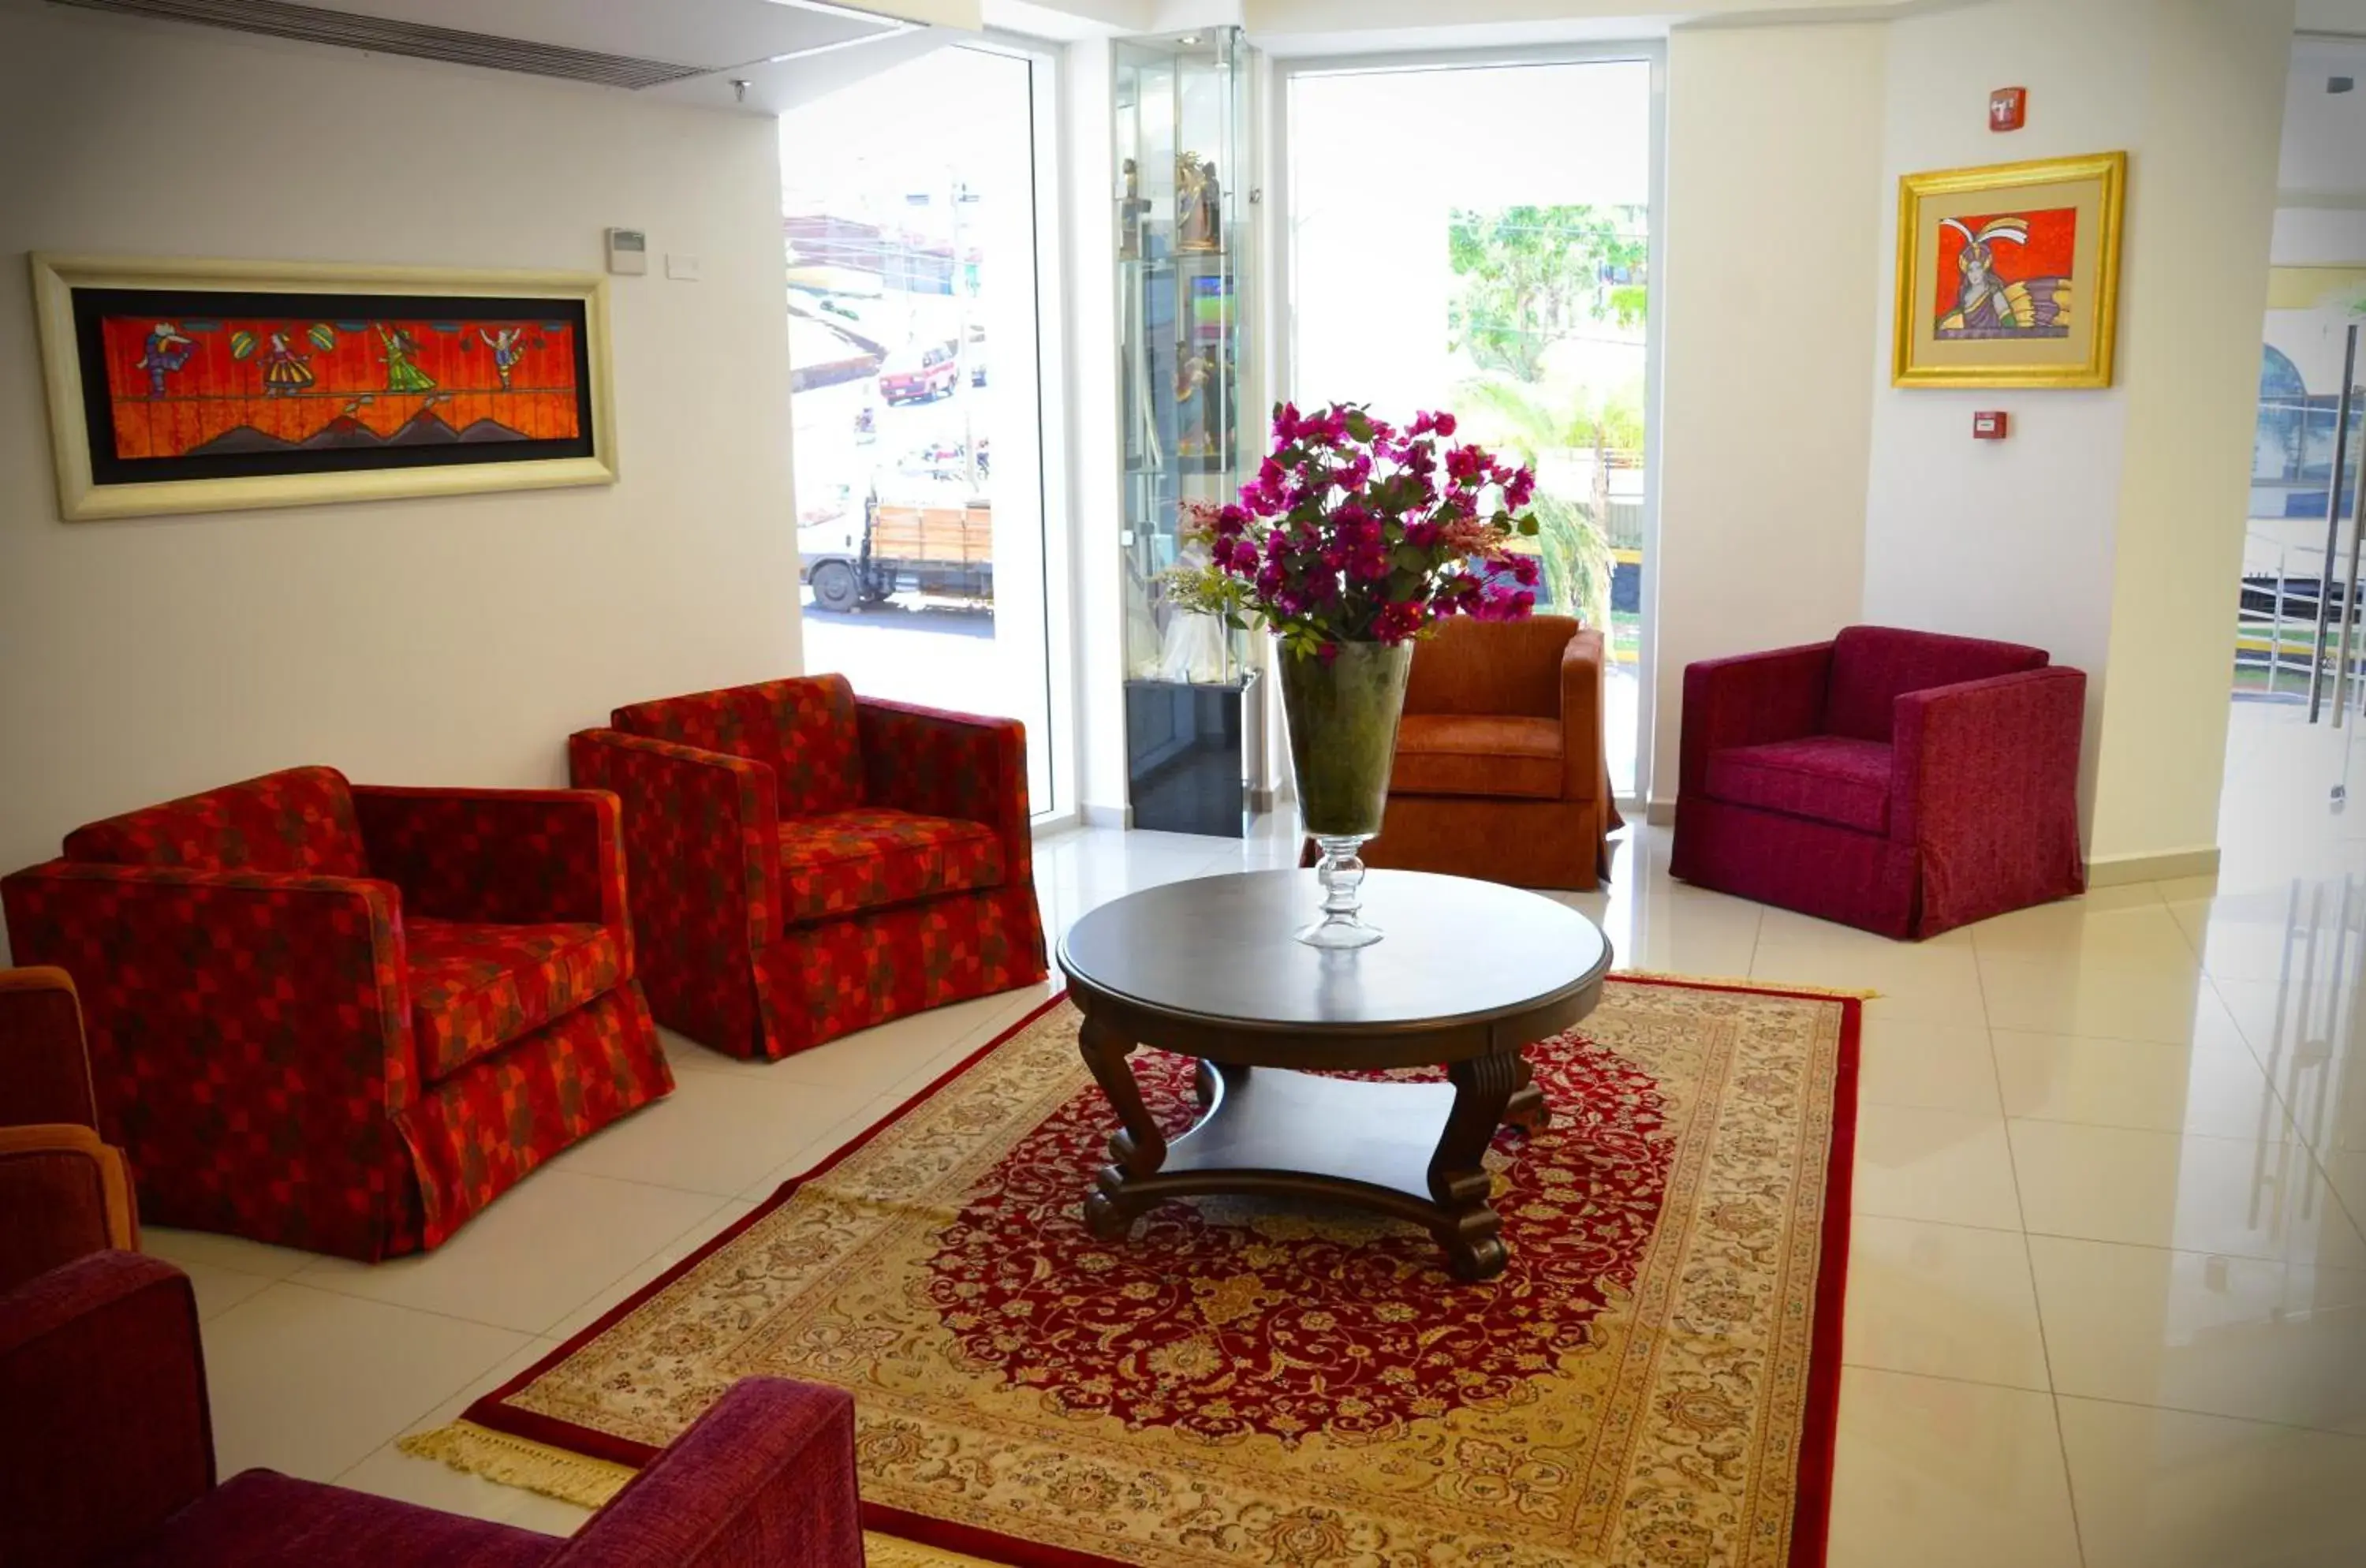 Lobby or reception, Seating Area in De la Trinidad Hotel